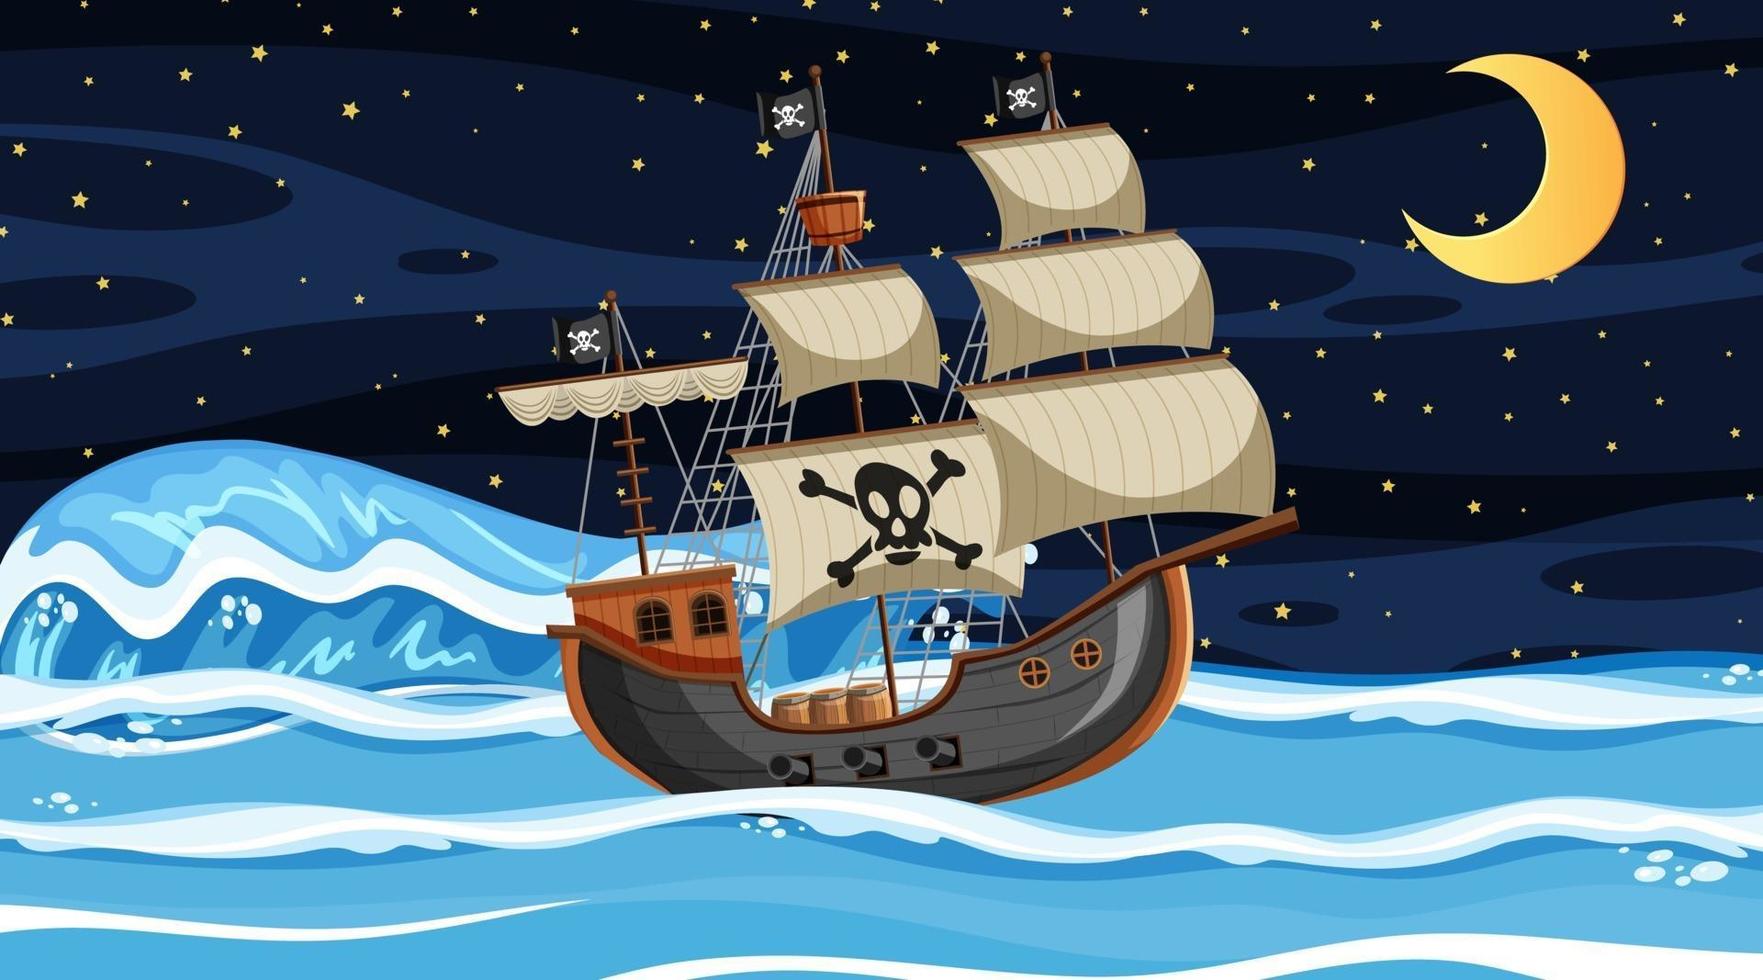 scena dell'oceano di notte con la nave pirata in stile cartone animato vettore